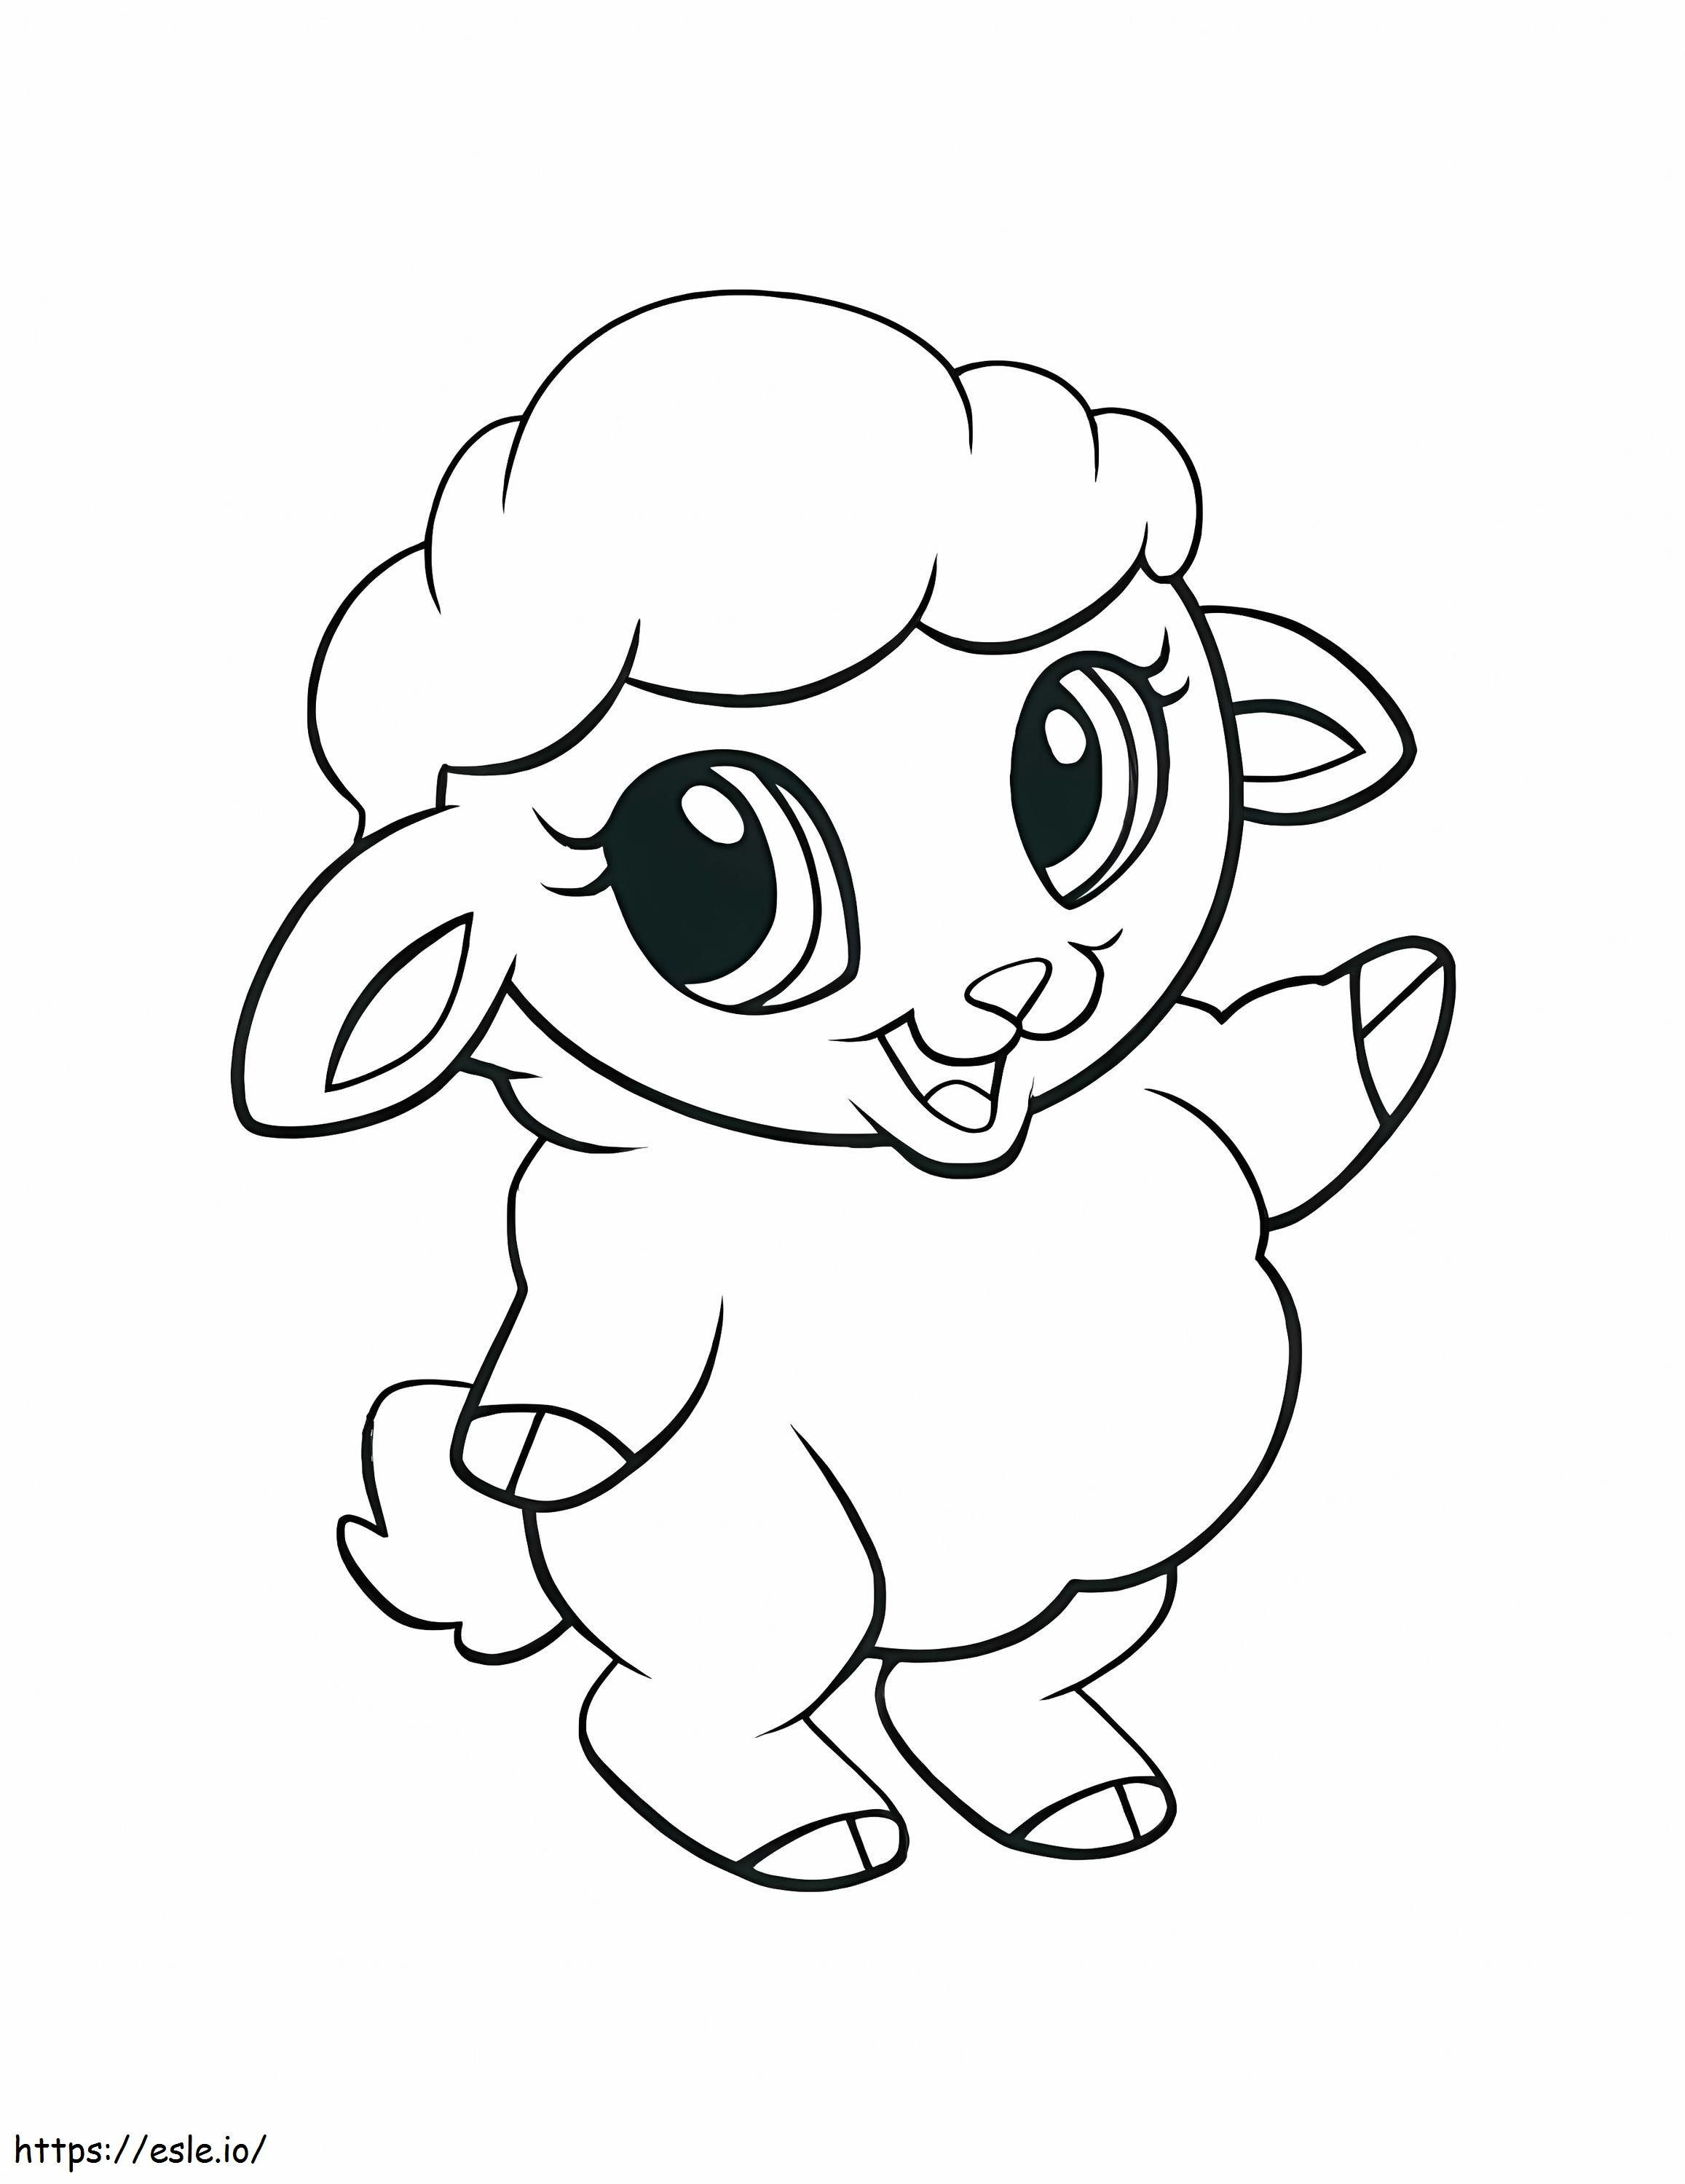 Kawaii Mouton coloring page